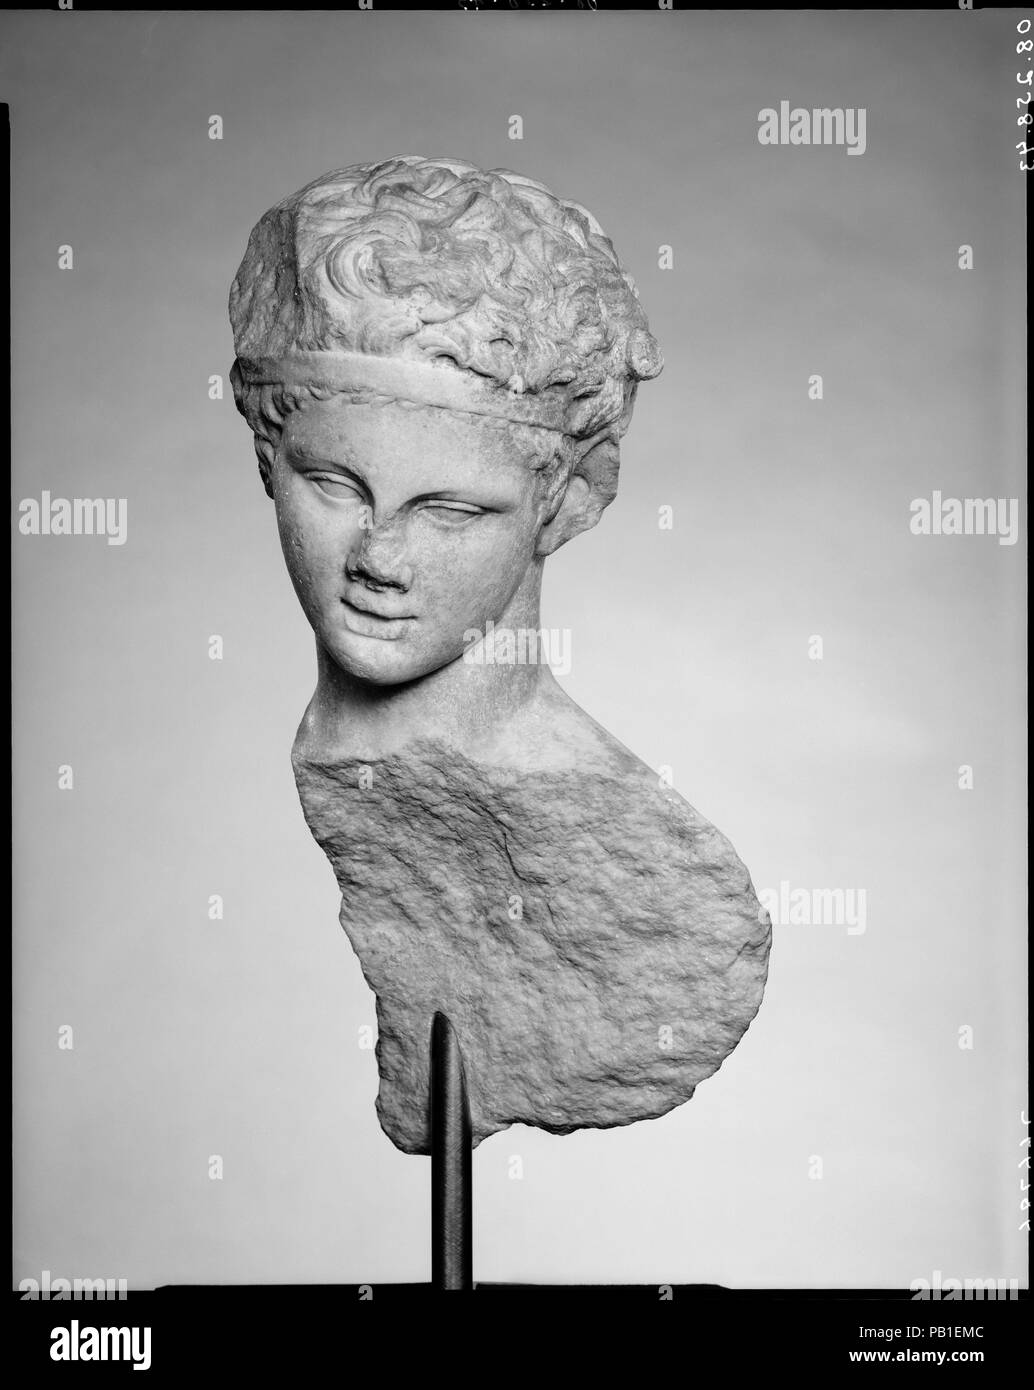 Kopf und ein Teil der Rückseite einer Marmorstatue. Kultur: Roman. Abmessungen: H. 17 1/4 (43,8 cm) Breite 8 cm (21.0) Tiefe 8 1/2 (21,6 cm). Datum: 1. oder 2. nachchristlichen Jahrhundert. Kopie eines Griechische Statue aus dem 4. Jahrhundert v. Chr. die jungen Satyr, identifizierbar durch seine Spitze die Ohren, wurde gezeigt, gießen Wein. Viele römische Kopien dieses ansprechende Arbeit sind heute bekannt. Museum: Metropolitan Museum of Art, New York, USA. Stockfoto